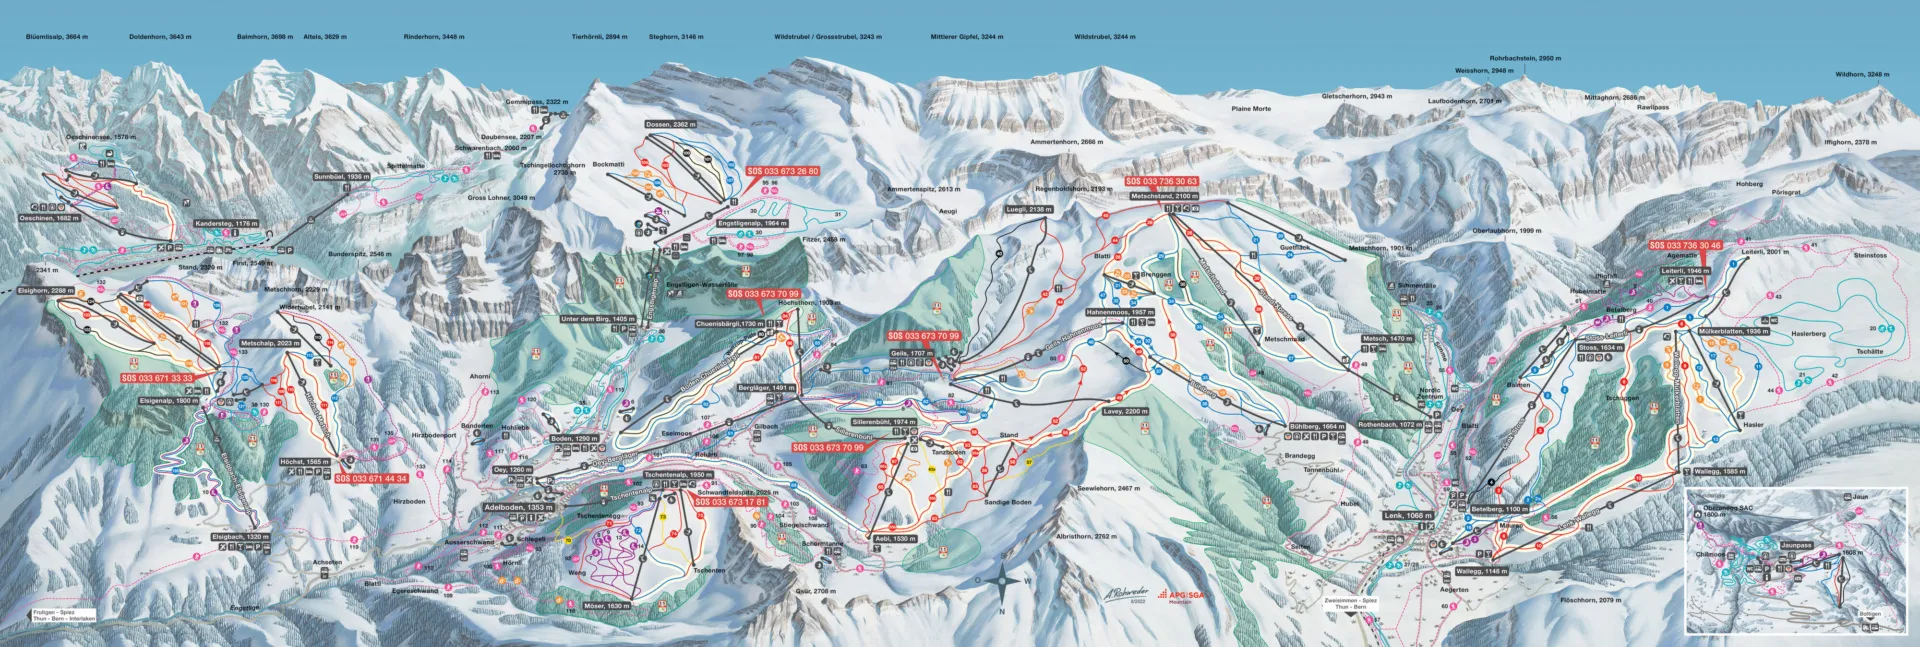 Het skigebied Adelboden-Lenk